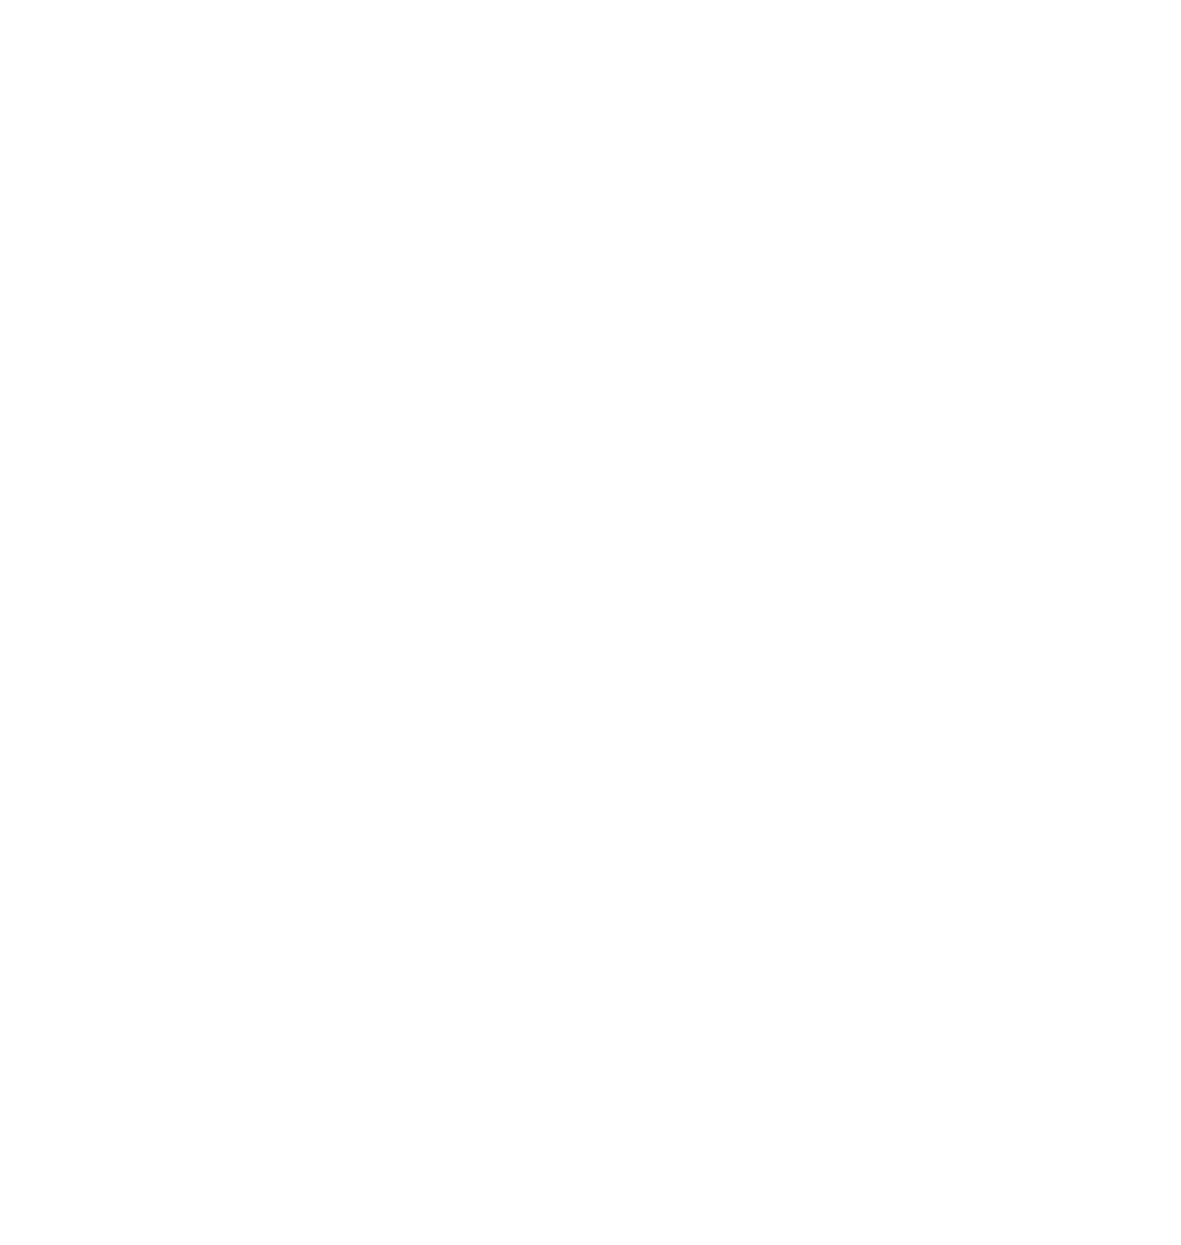 Logo Het Nieuwsblad